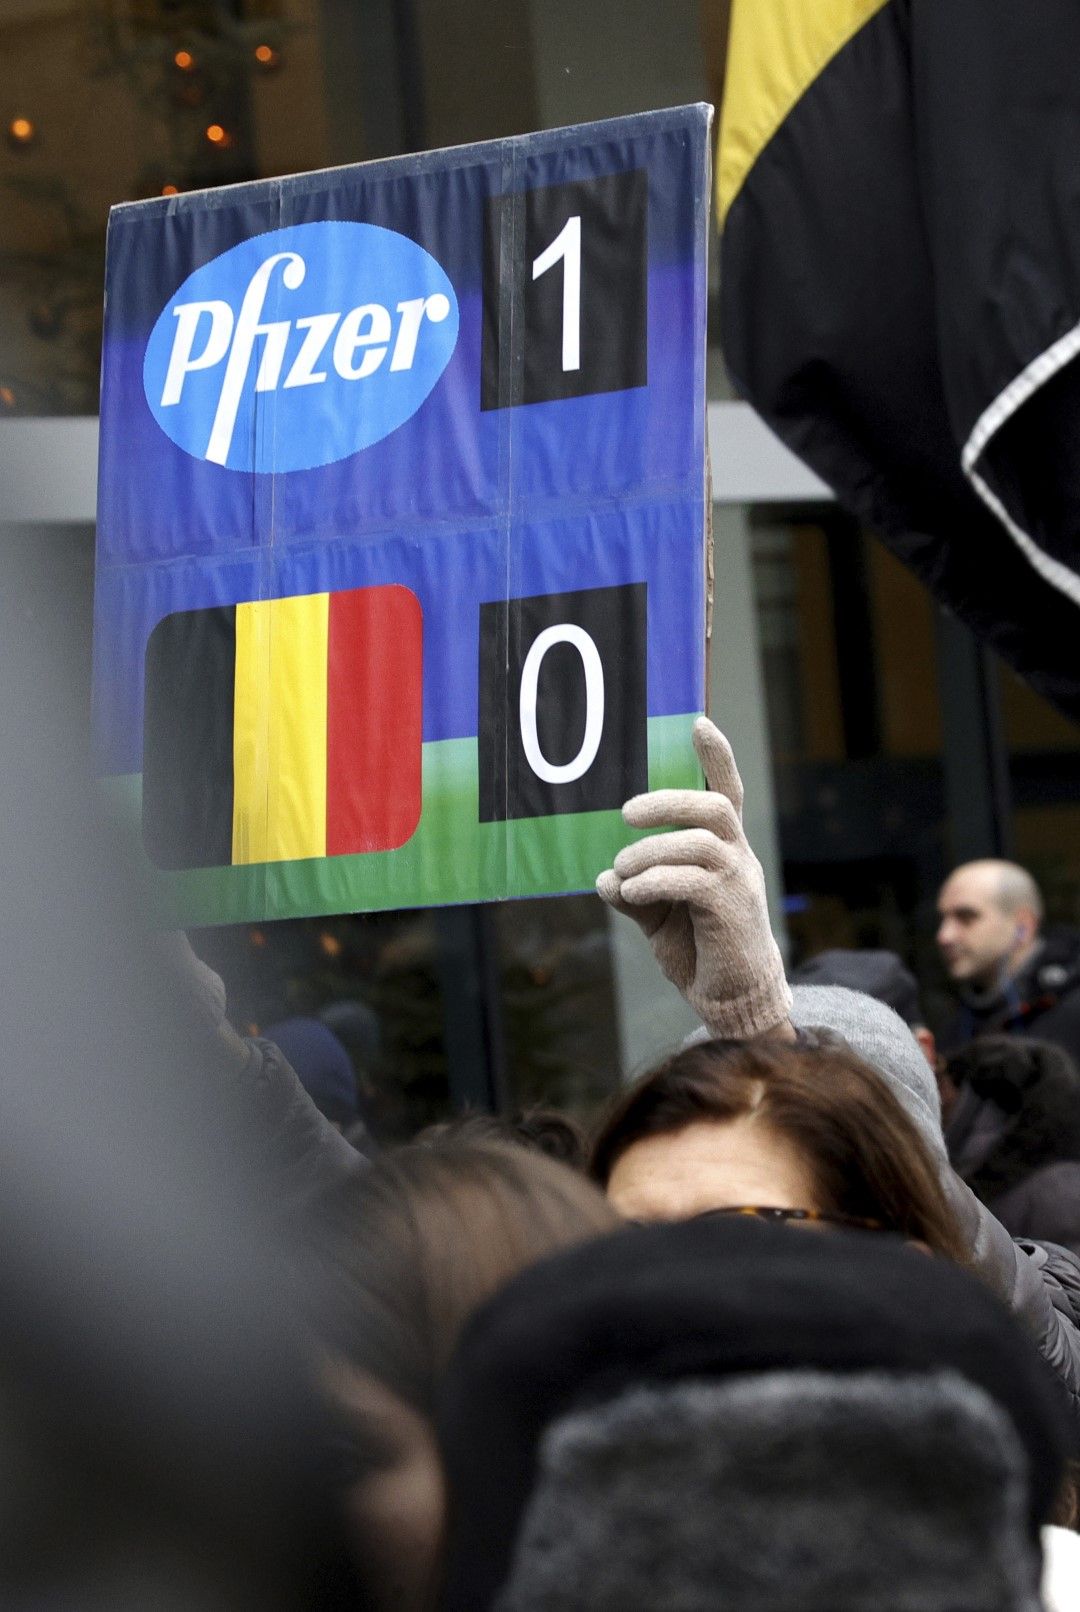 Протестиращ държи плакат с резултат, която показва „Pfizer-1, Белгия-0“ по време на демонстрация срещу ограничителните мерки за COVID-19 в Брюксел, 19 декември 2021 г.